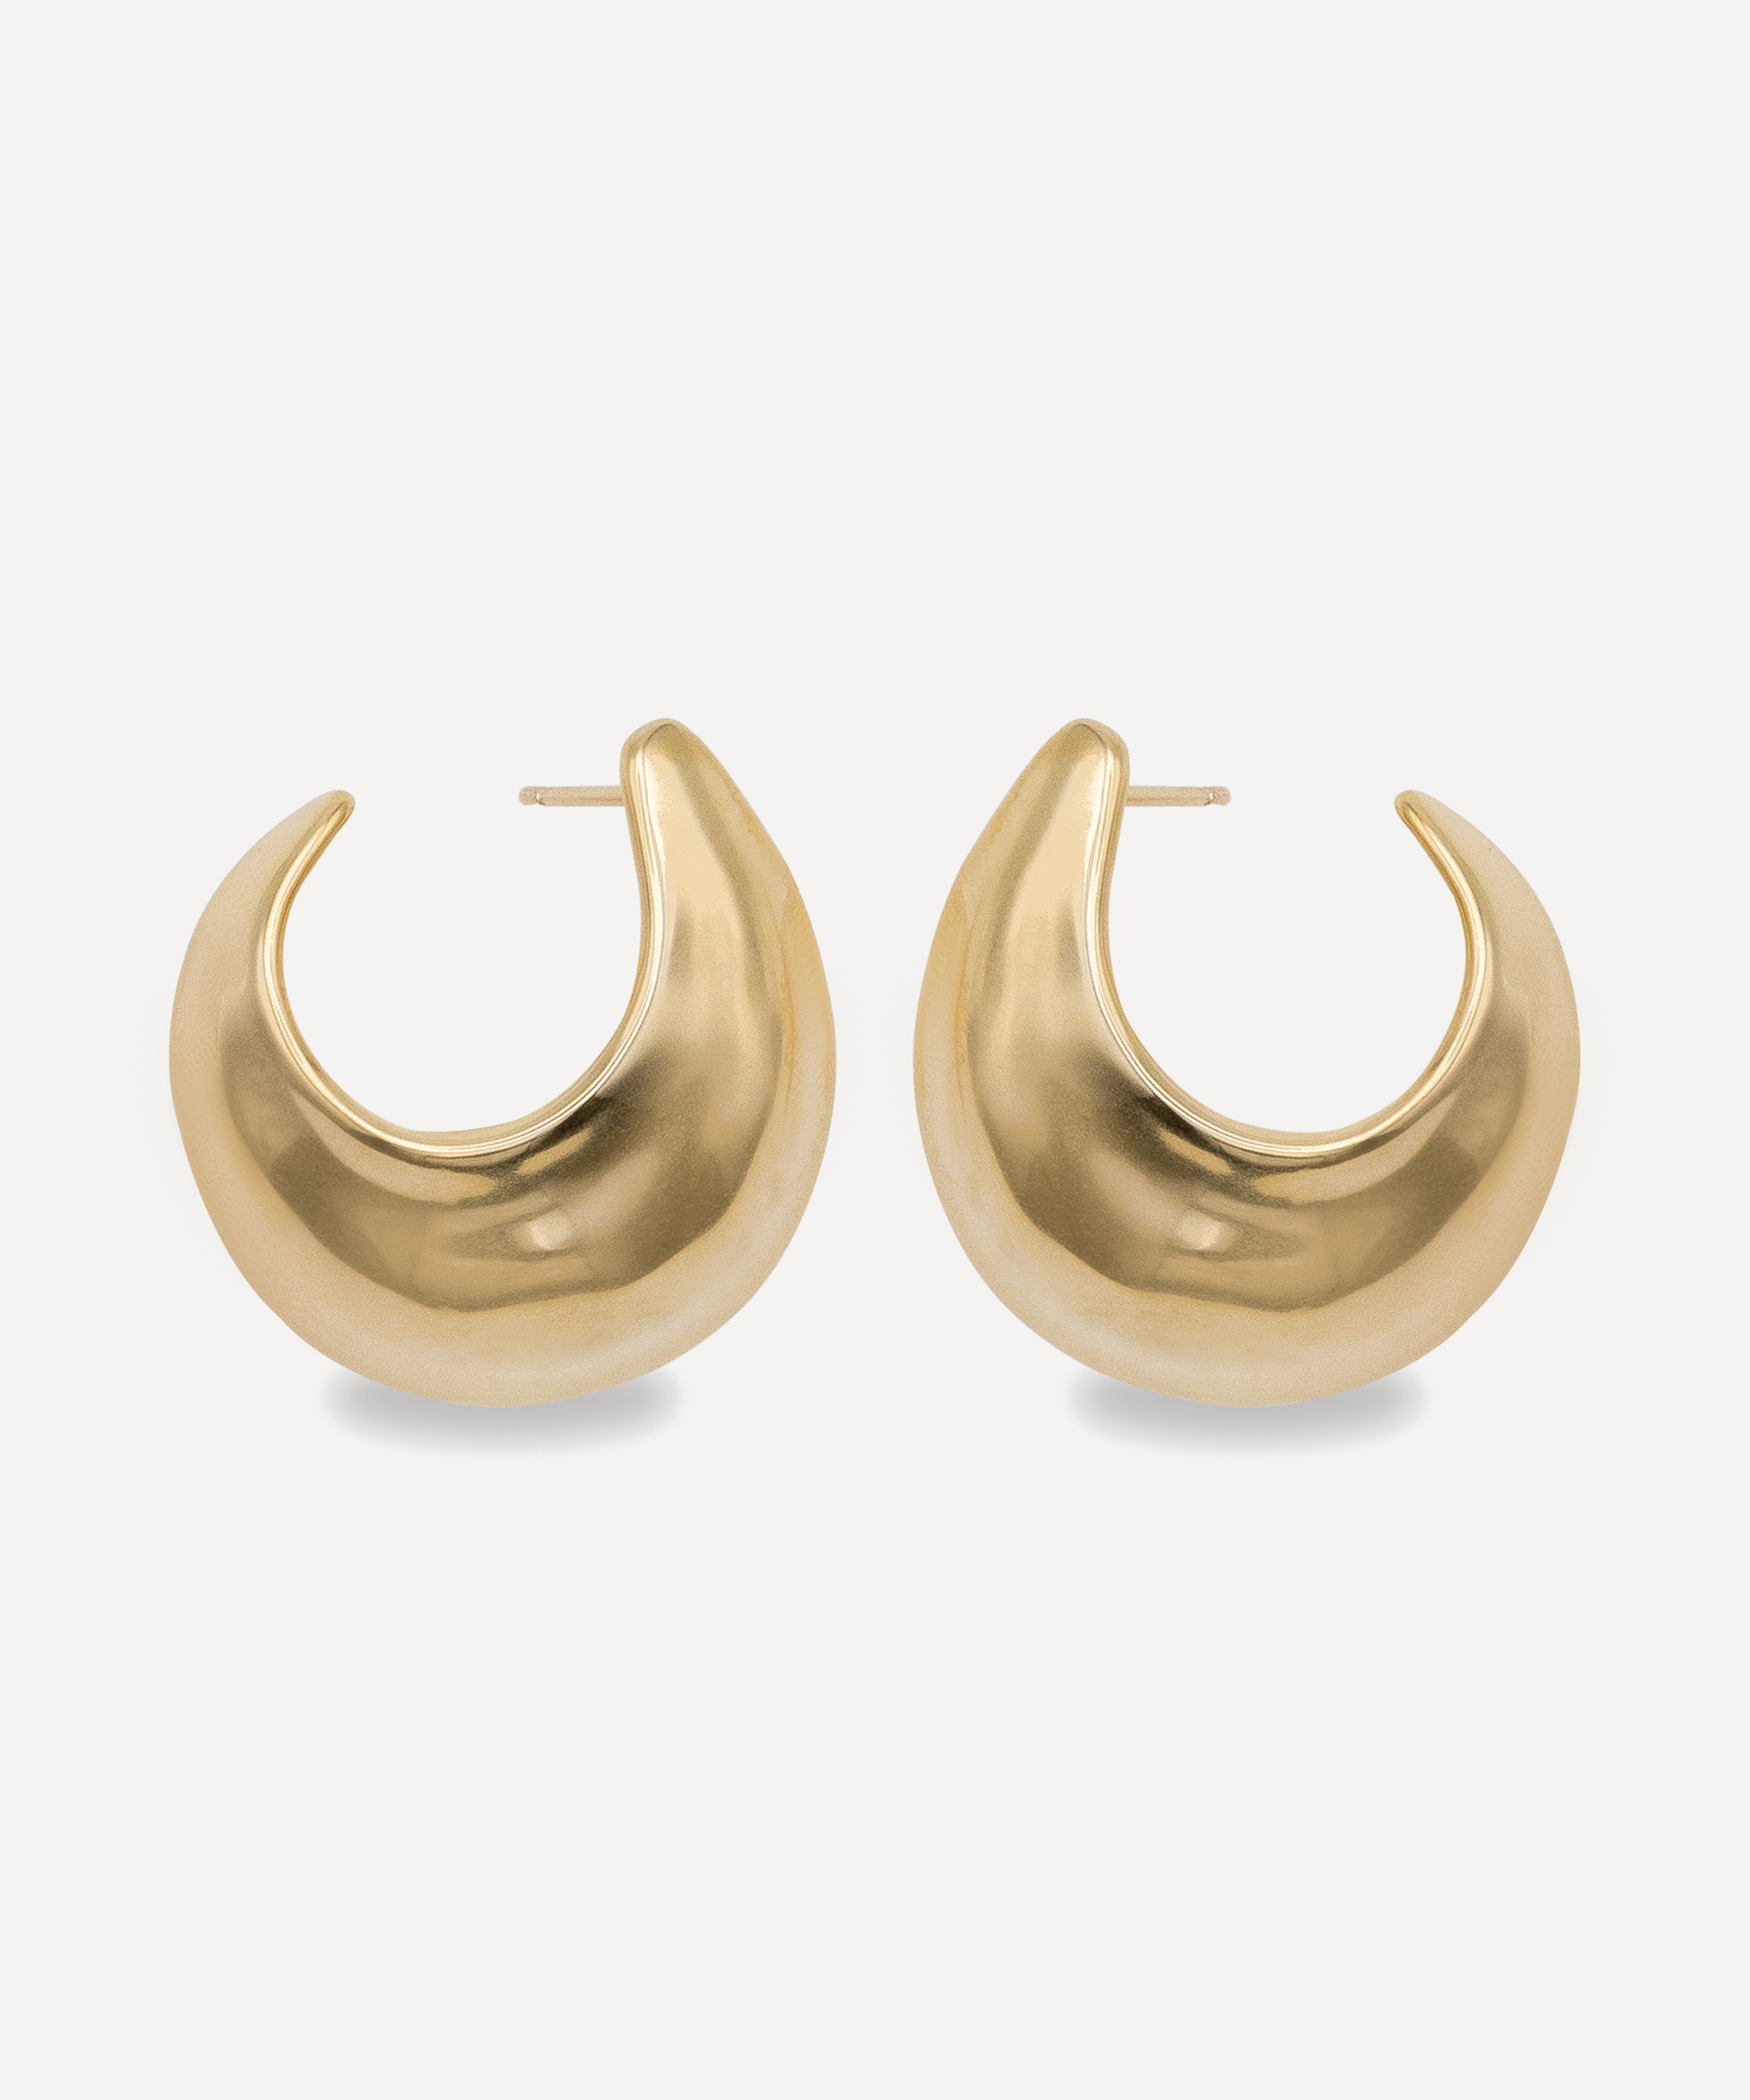 By Pariah 14ct Gold-Plated Vermeil Silver Sabine Medium Hoop Earrings |  Liberty